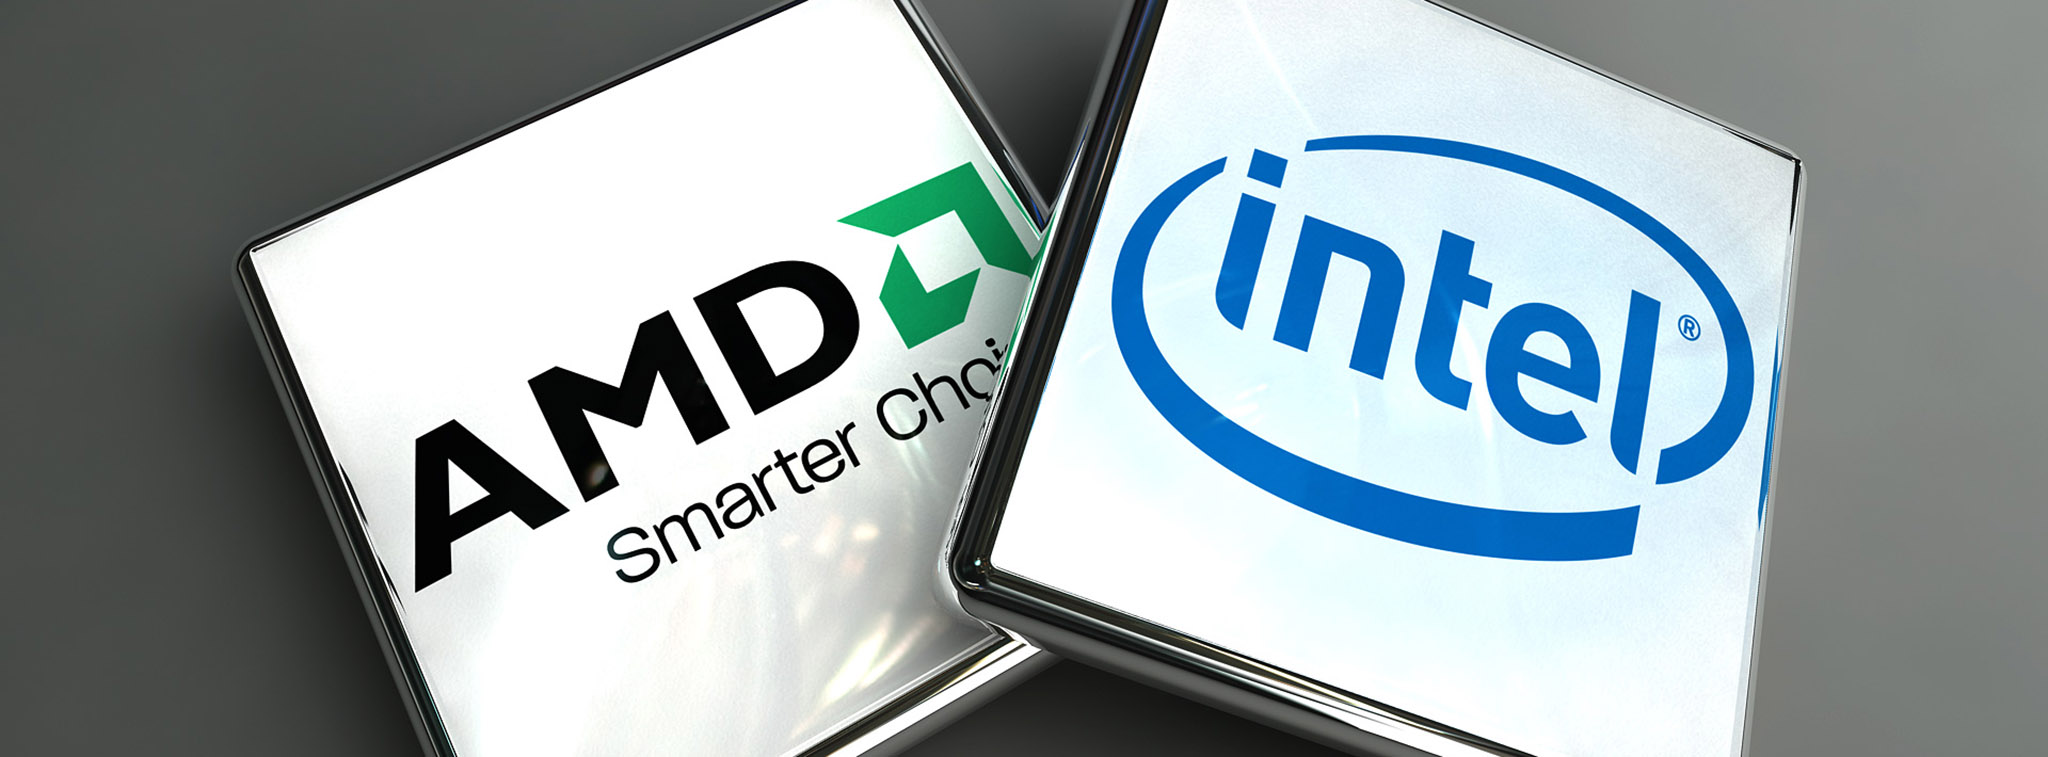 Intel hợp tác với AMD tích hợp GPU Vega vào các vi xử lý cho laptop thế hệ mới?